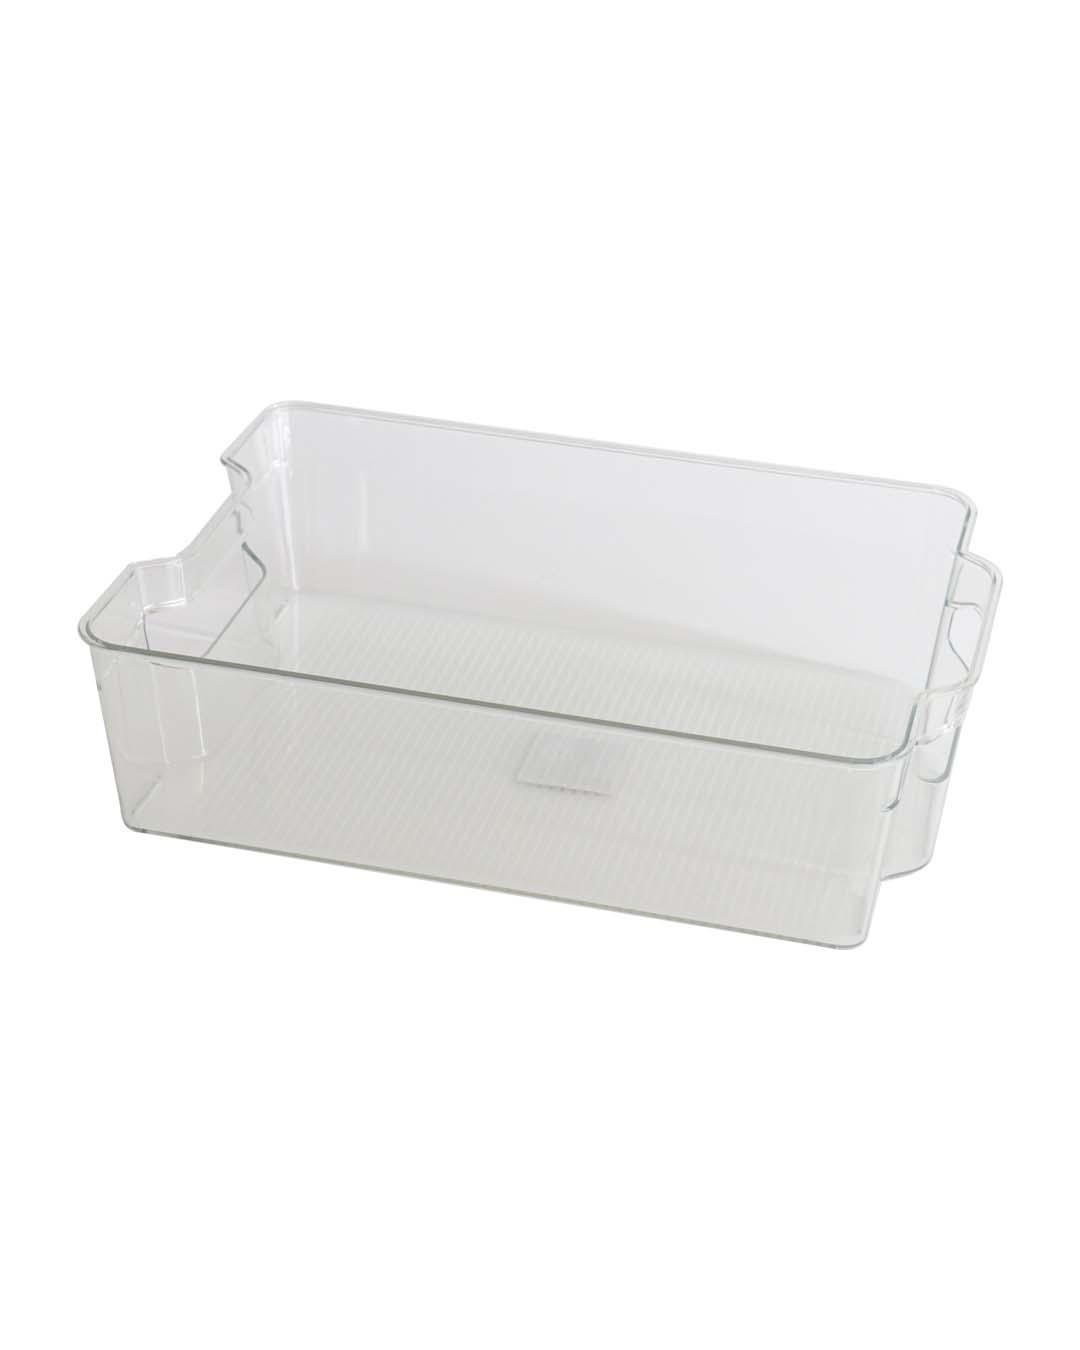 Plastic, Refrigator Box, Plain, Glossy : Finish, Multicolor